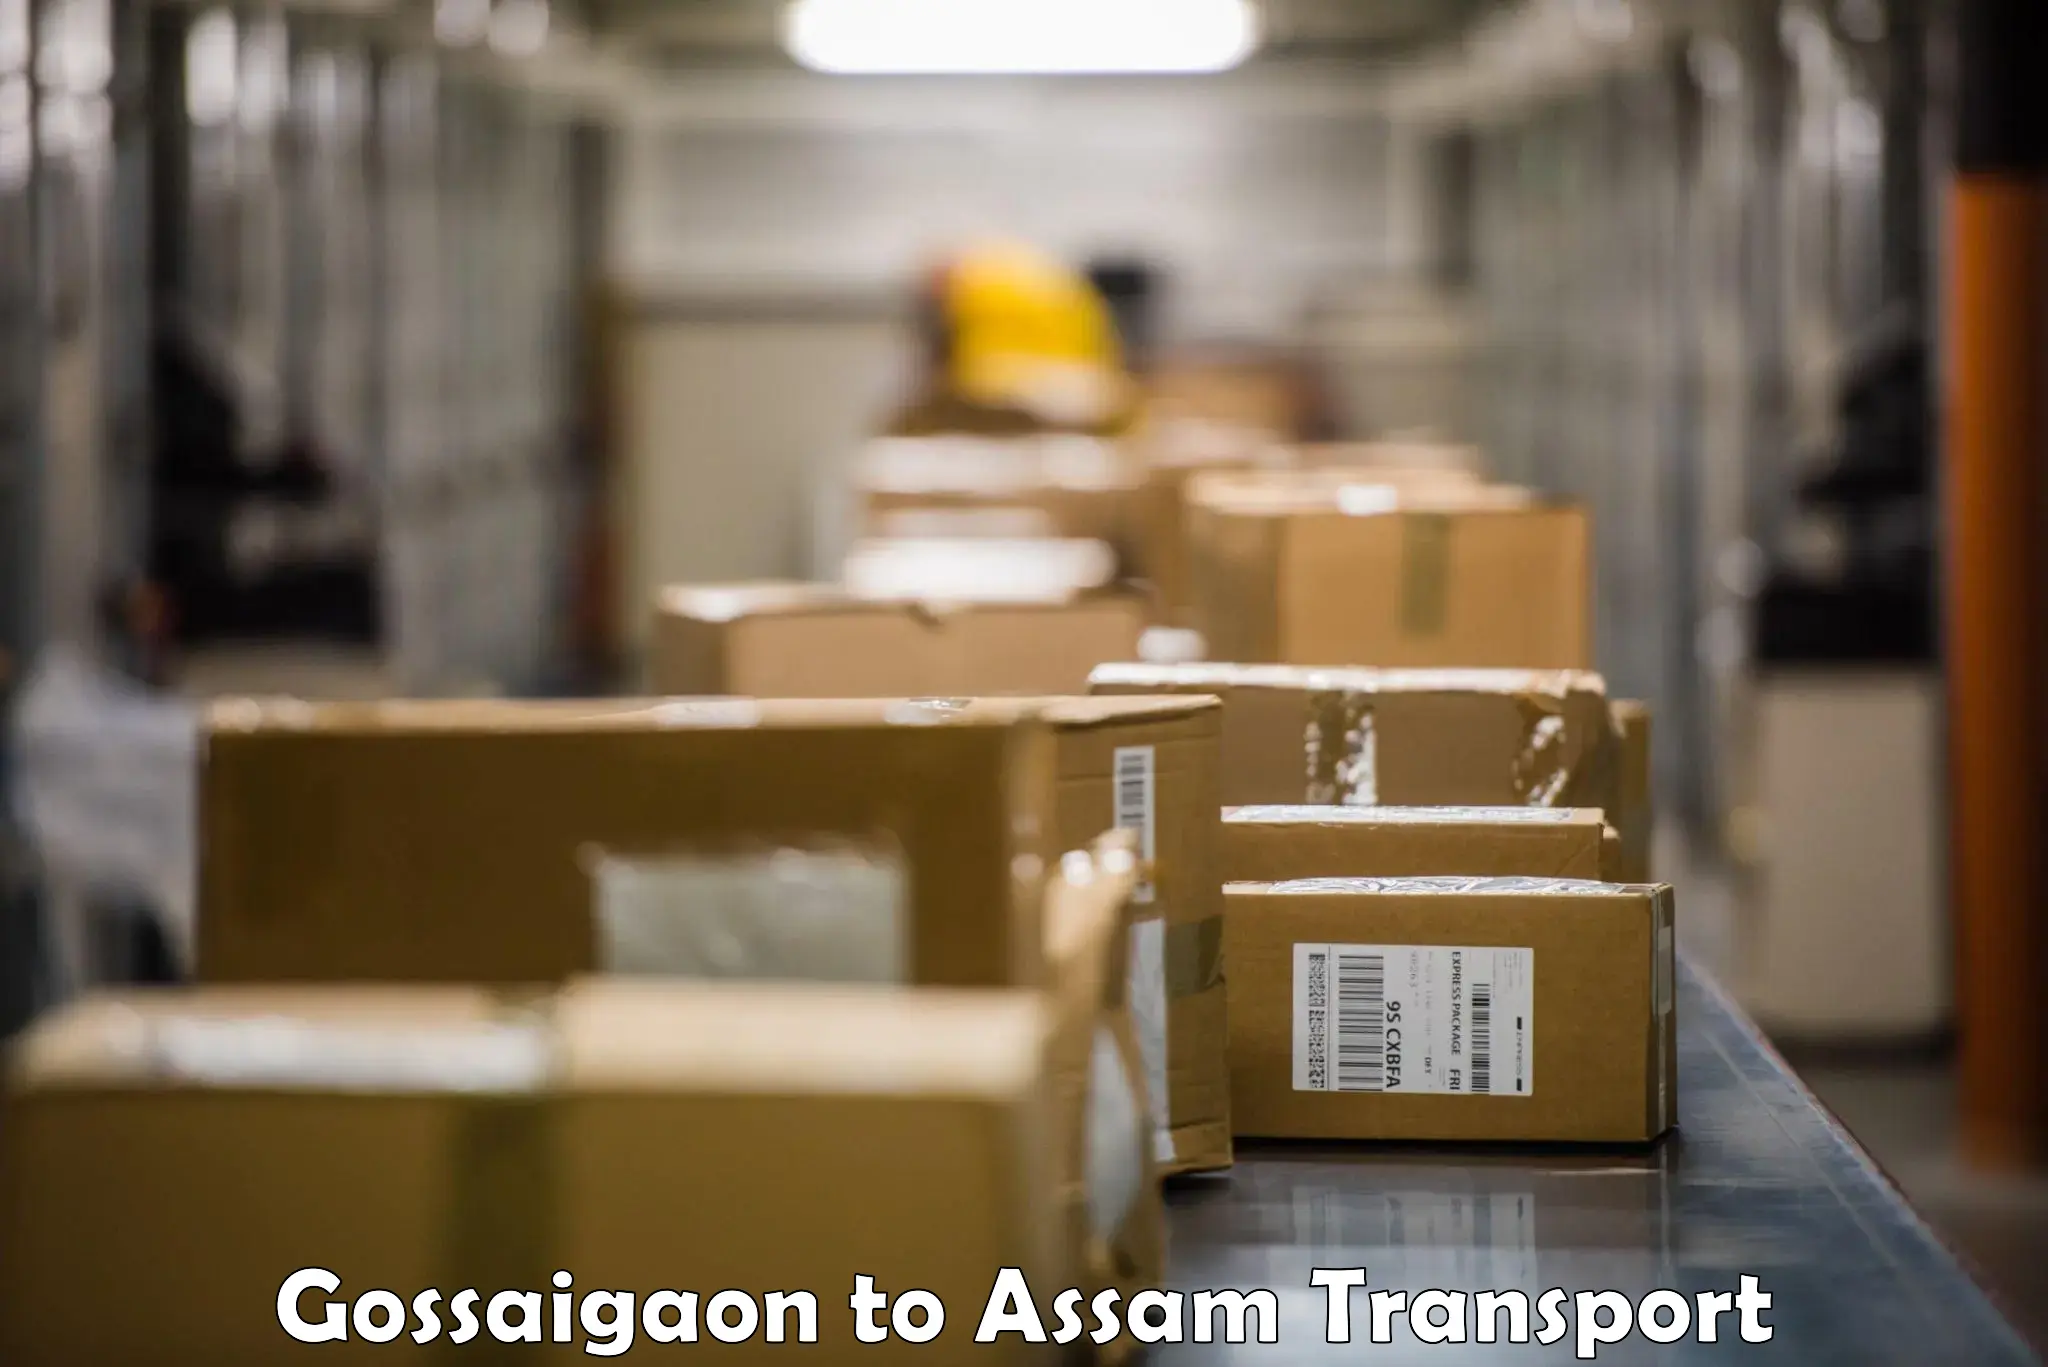 Interstate transport services Gossaigaon to Jorabat